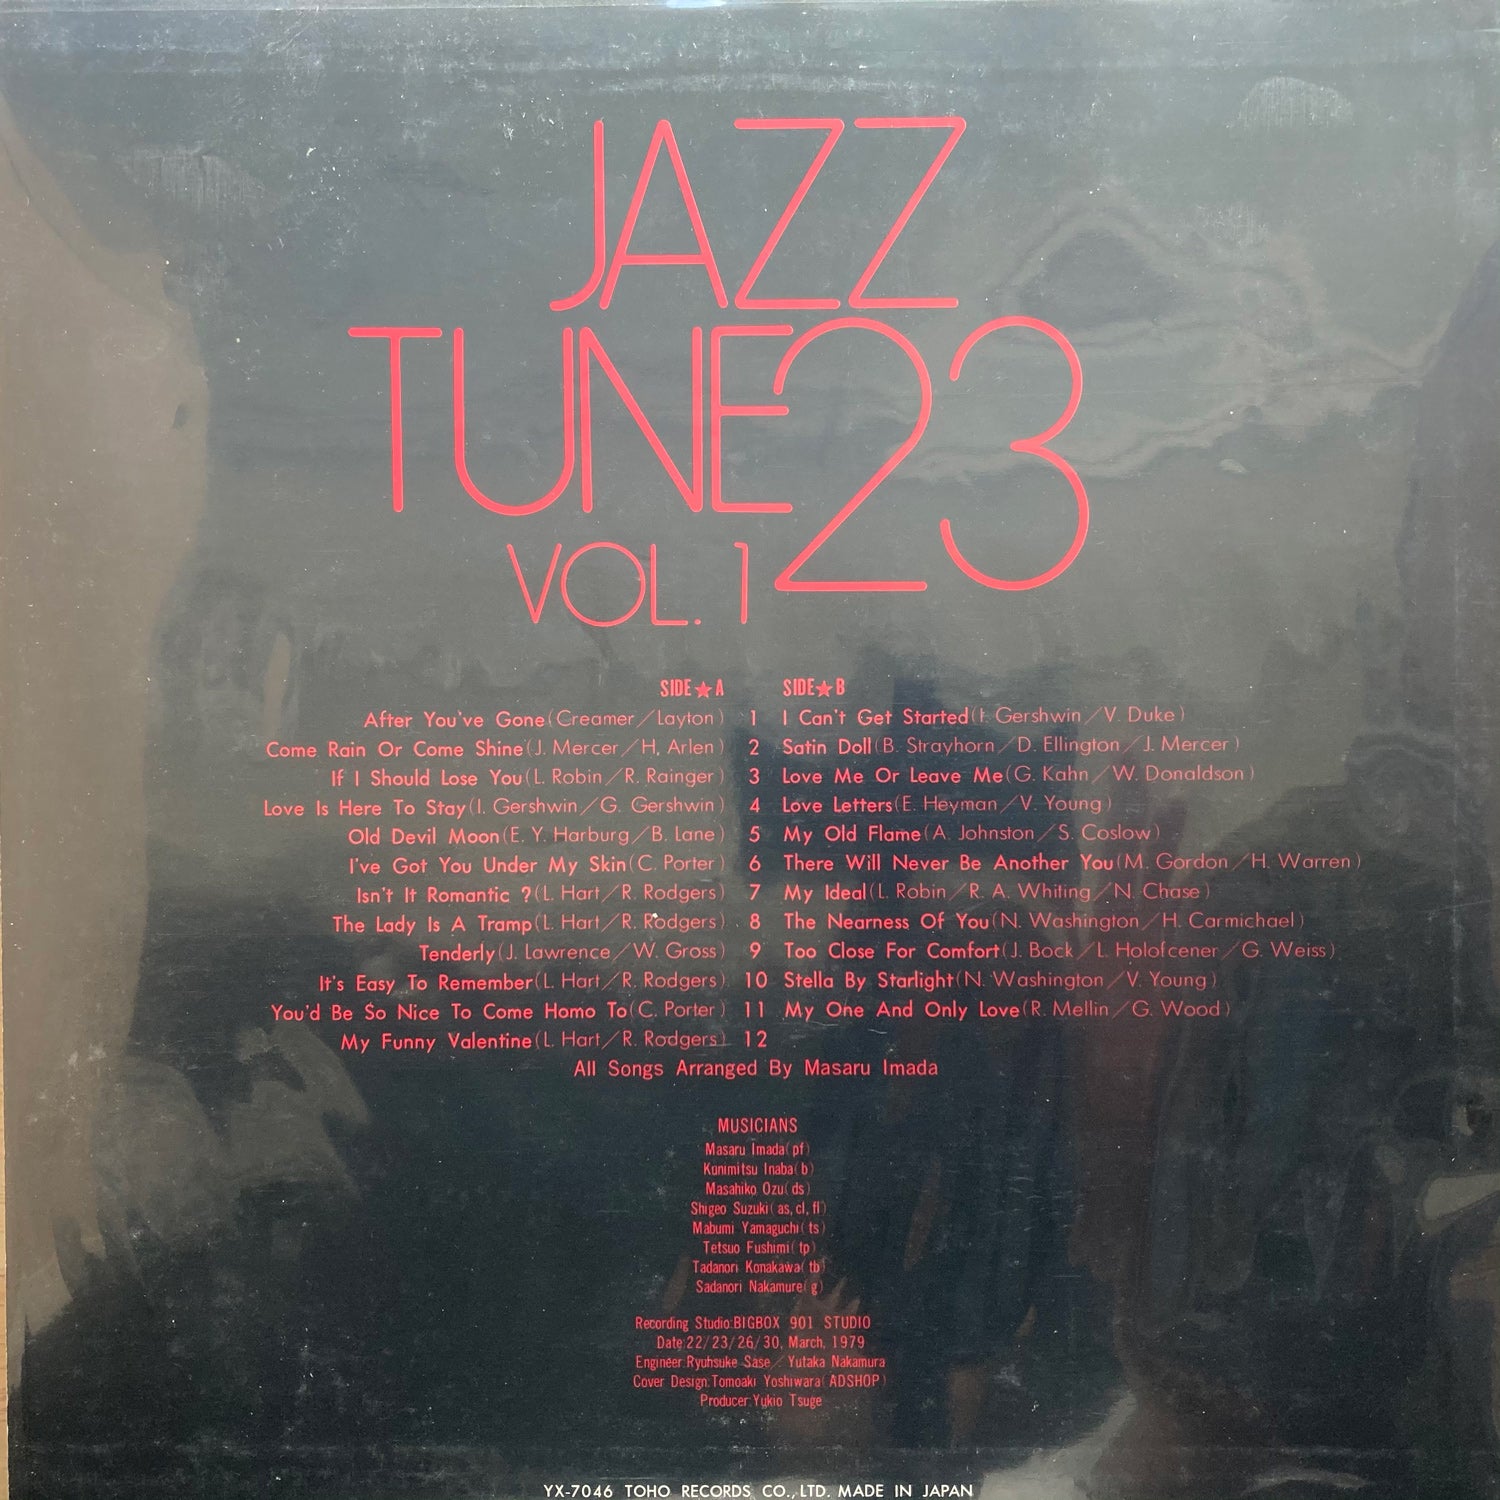 Jazz Tune 23 - Vol. 1